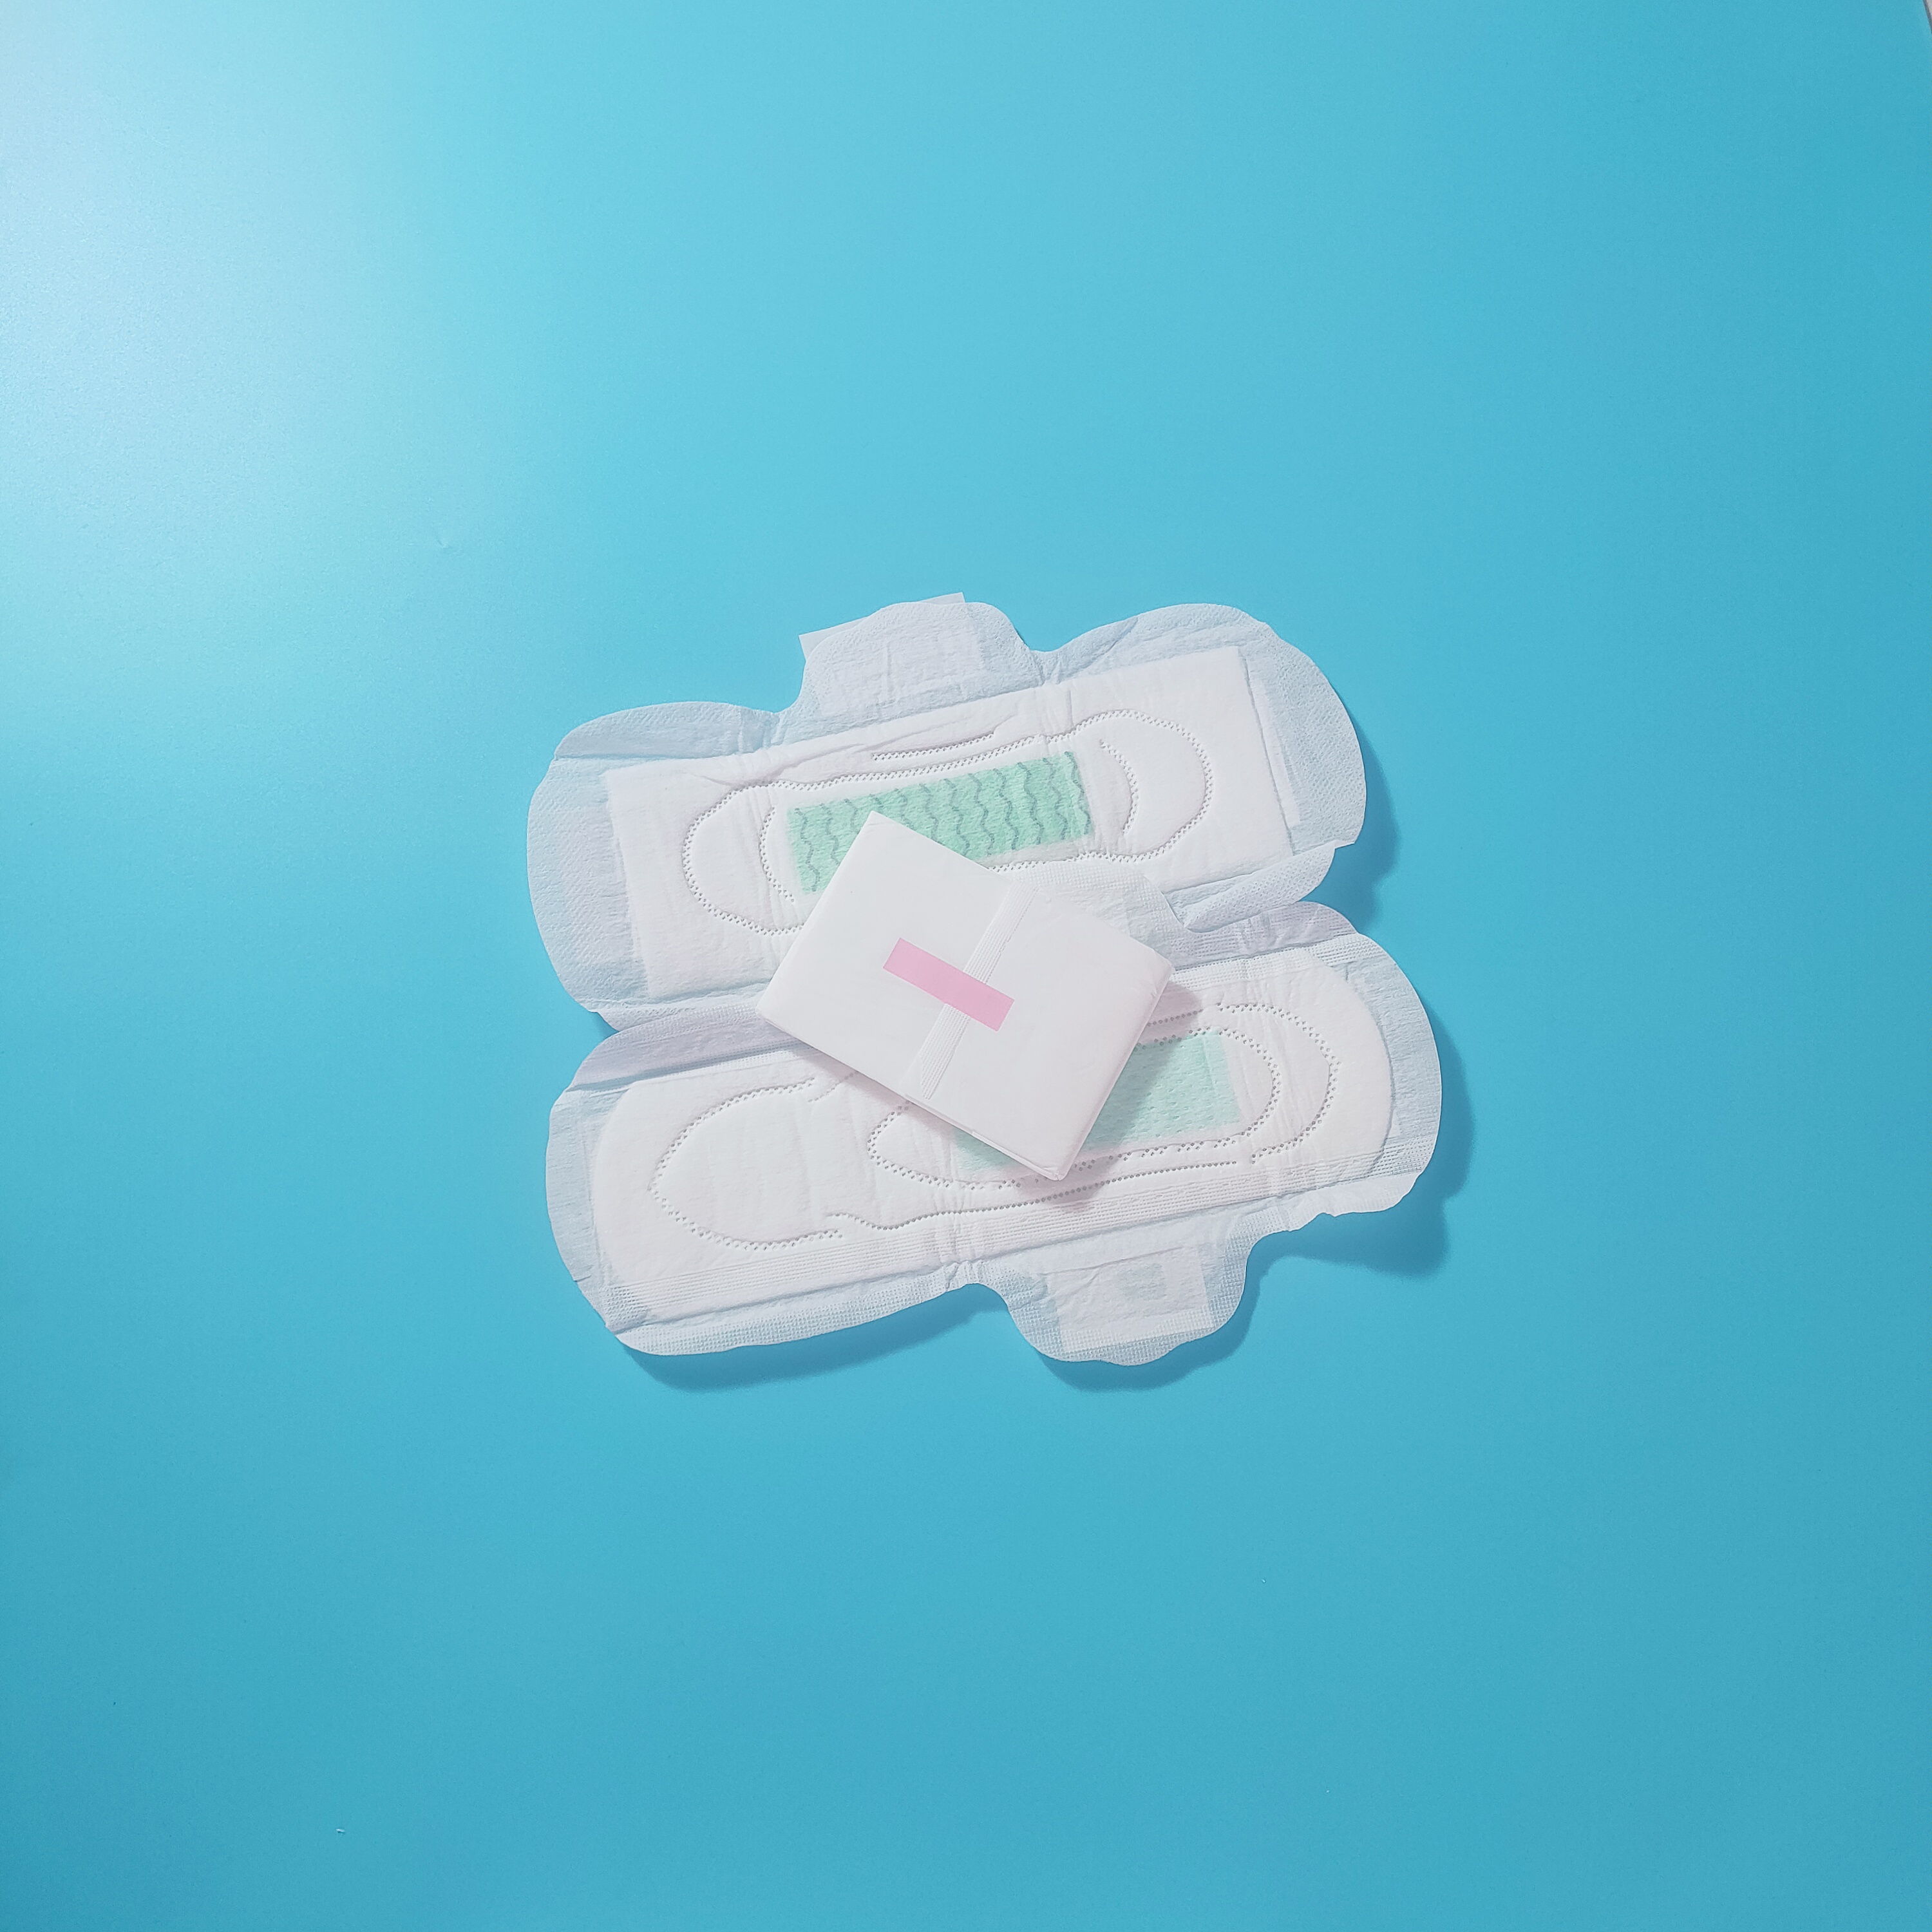 Serviette hygiénique féminine en gros dames serviettes hygiéniques période menstruelle